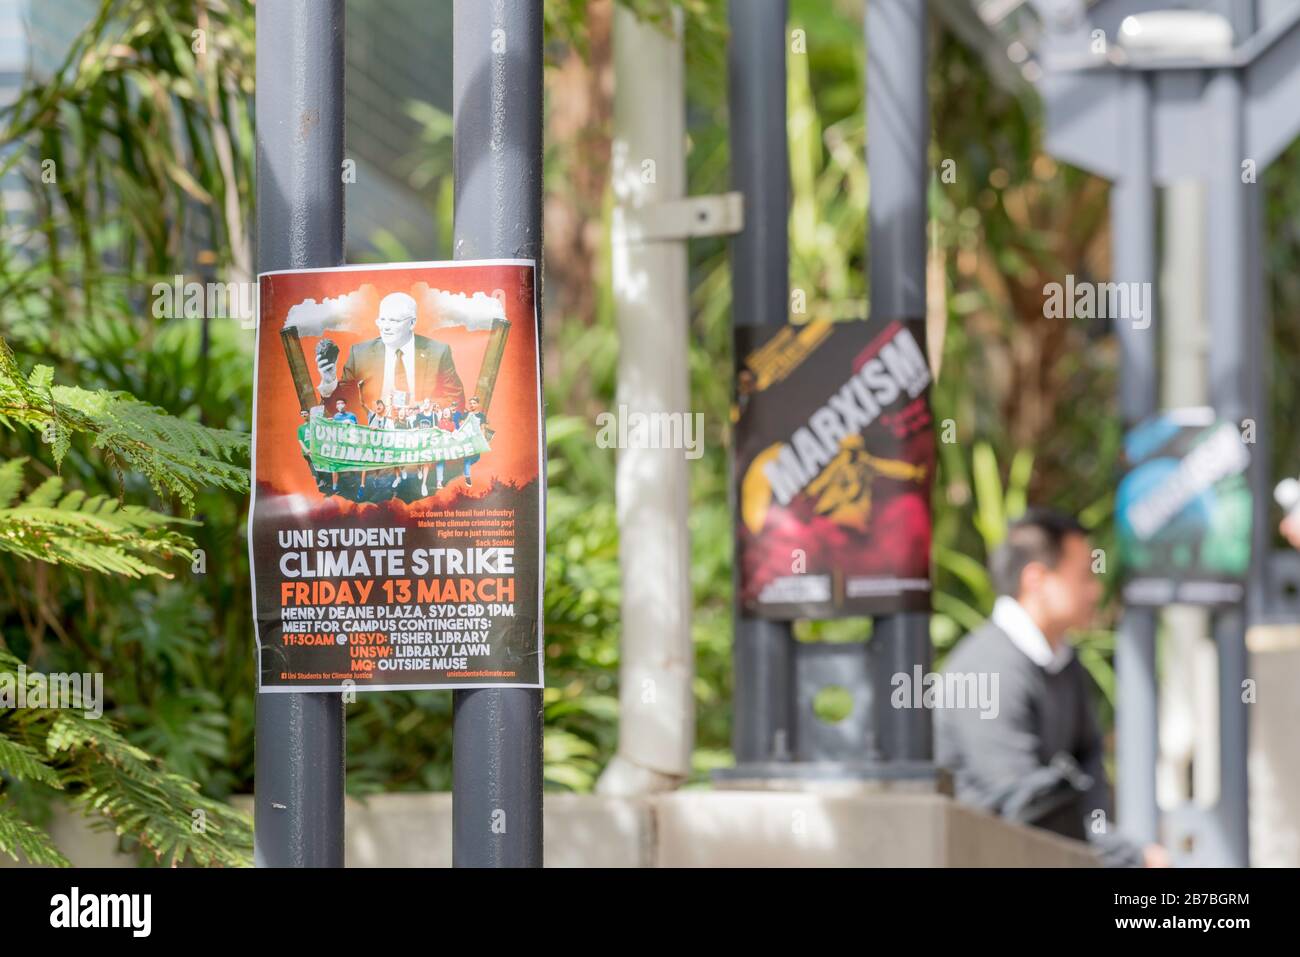 Deux affiches collées aux poteaux dans un passage à l'Université de Nouvelle-Galles du Sud annonçant une grève du climat étudiant le 13 mars 2020 et aussi le marxisme Banque D'Images